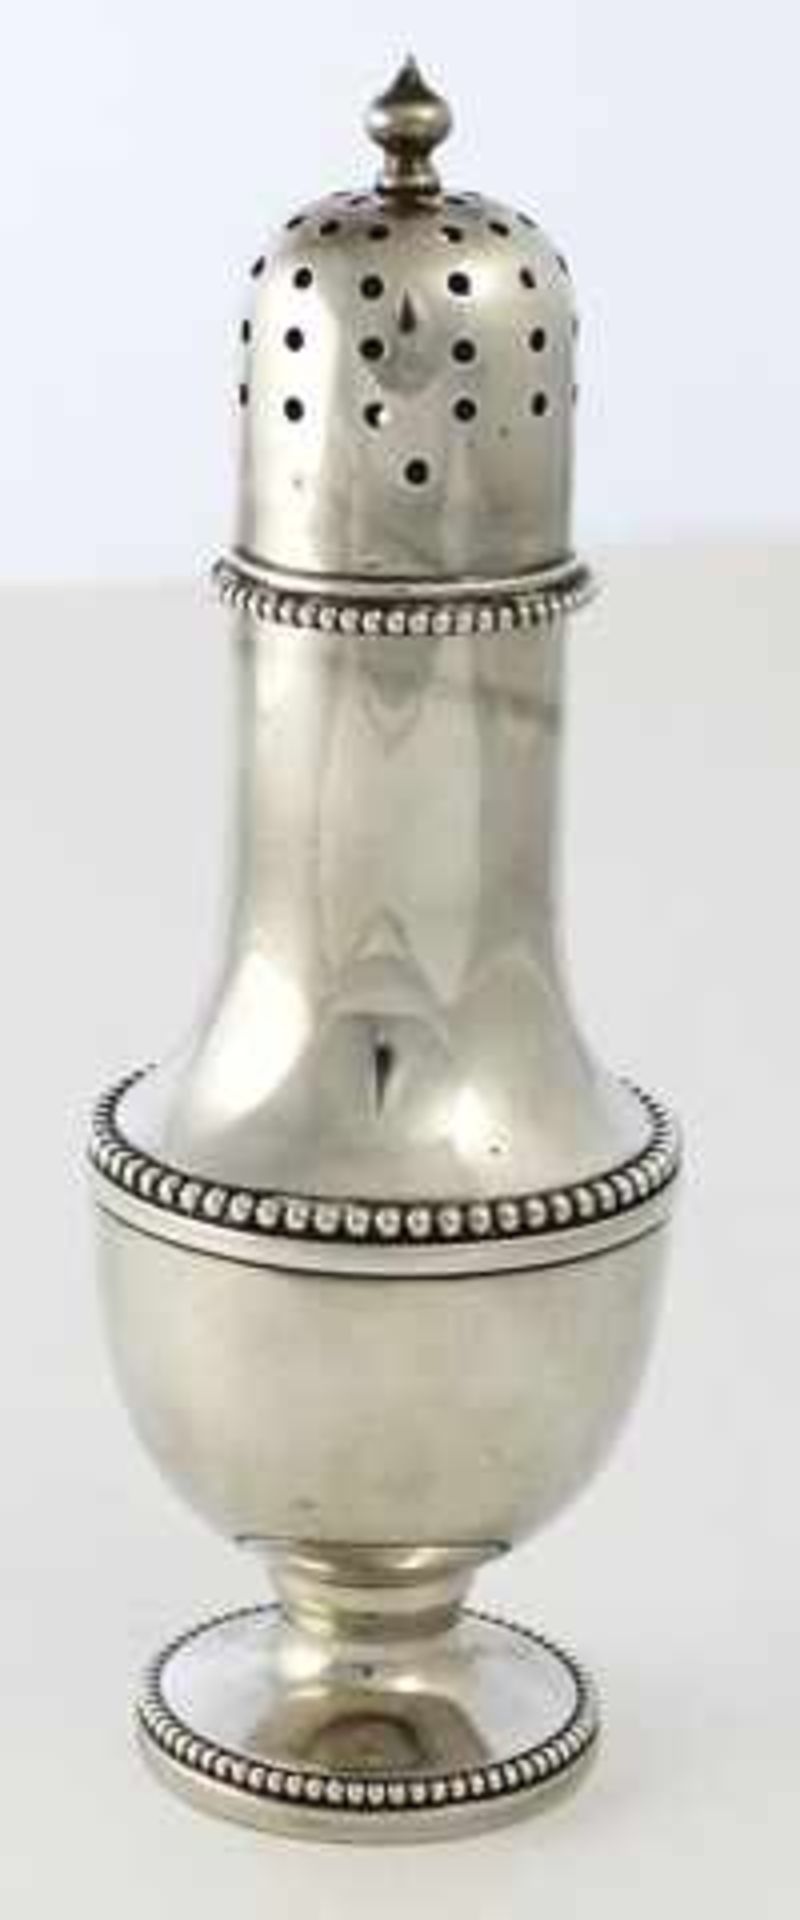 Gewürzstreuer mit abnehmbarem Deckel in 835er Silber, punziert B & N; Gewicht: 102 g, Höhe: 15,0 cm.